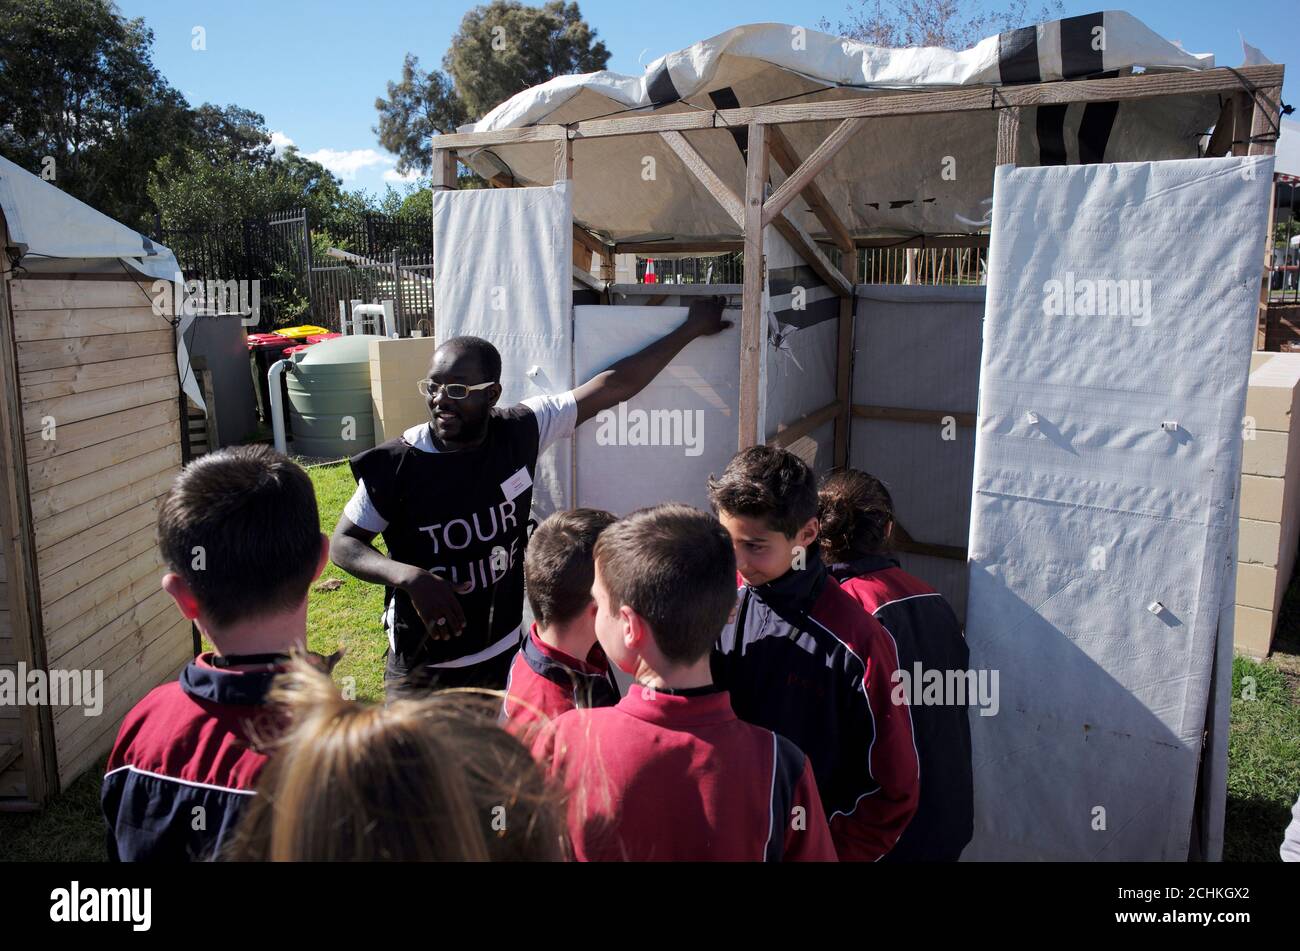 Khalid Abubaker aus Libyen, 33, zeigt Studenten einer Schule in Sydney eine Scheindusche für Flüchtlingslager in der Installation "Flüchtlingslager in meiner Nachbarschaft" in einem Sydney Park in Australien, 7. August 2017. Das temporäre "Flüchtlingslager"-Projekt, das von einem lokalen Sydney council gegründet wurde, wurde gegründet, um die realen Lebensbedingungen von Flüchtlingslagern auf der ganzen Welt zu replizieren und beschäftigt ehemalige Flüchtlinge als Reiseführer, um Australier über die Notlage von Millionen Vertriebenen in humanitären Notlagen weltweit zu informieren. REUTERS/Jason Reed Stockfoto